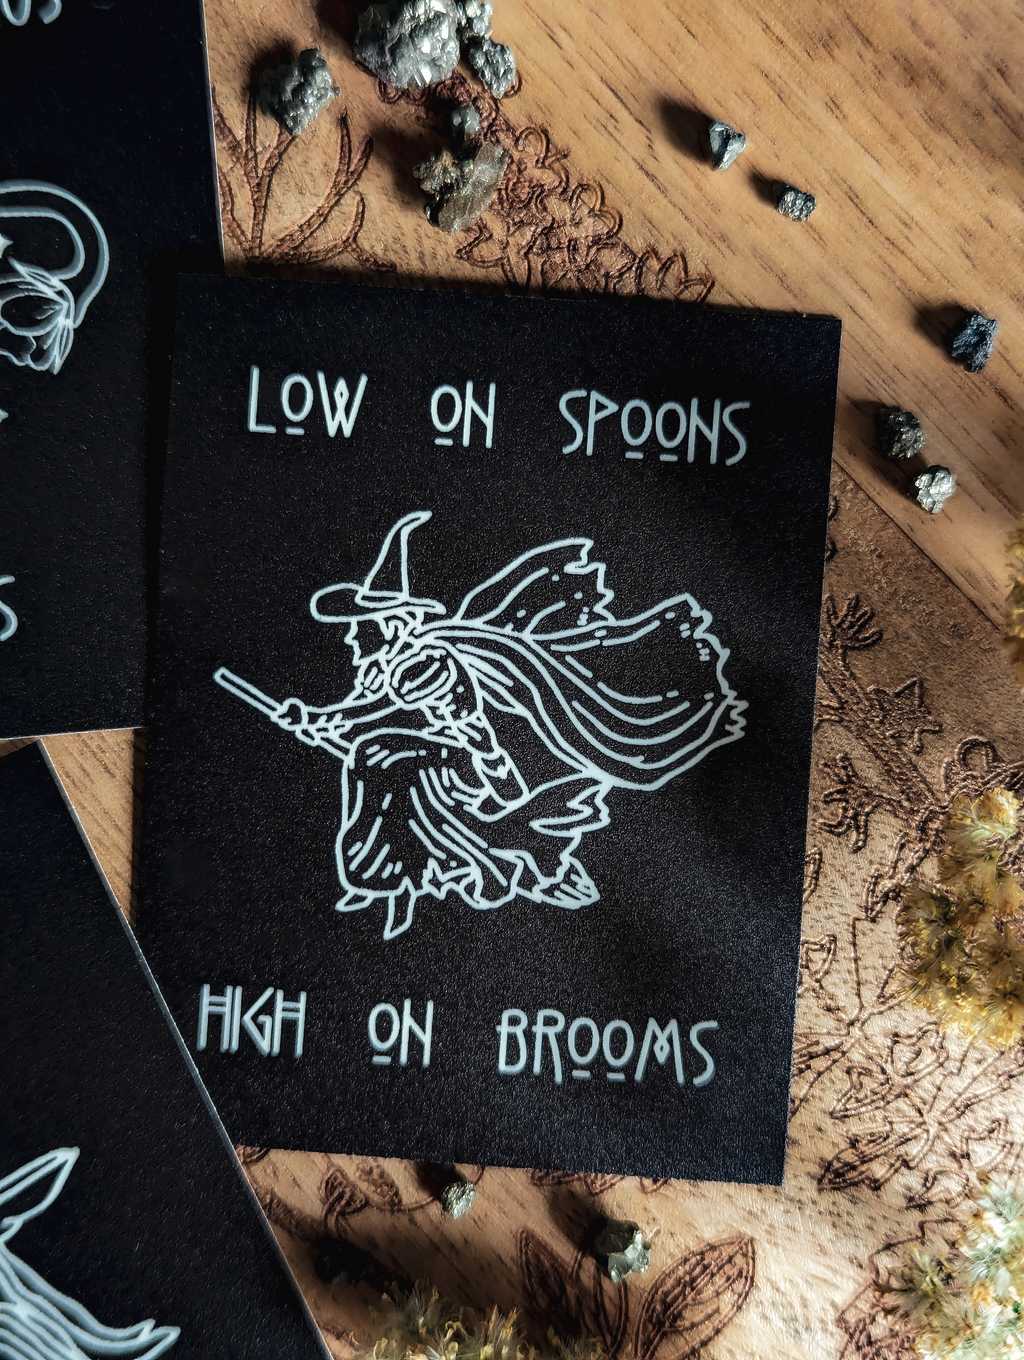 Auf einem Holzbrett liegt ein mattschwarzer Sticker. In weißer Farbe ist eine Hexe auf einem Besen zu sehen. Dazu der Spruch: Low in Spoons High in Brooms